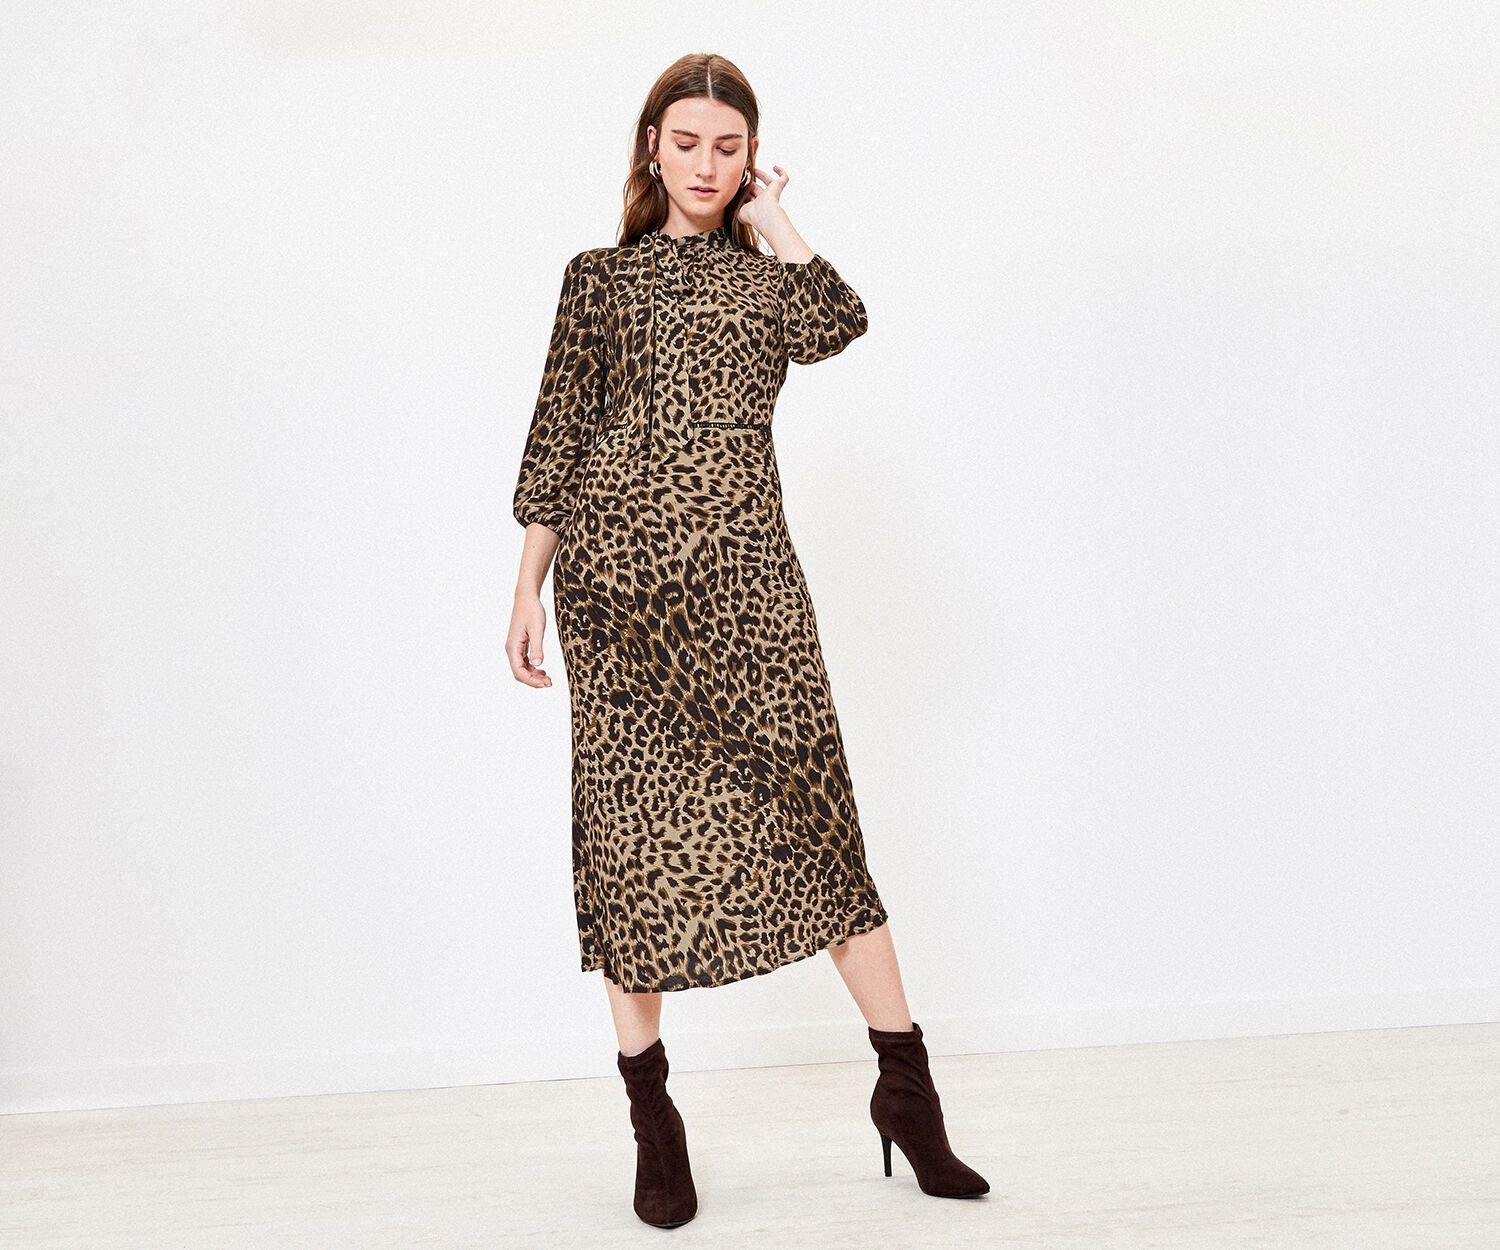 lorraine kelly leopard print dress today